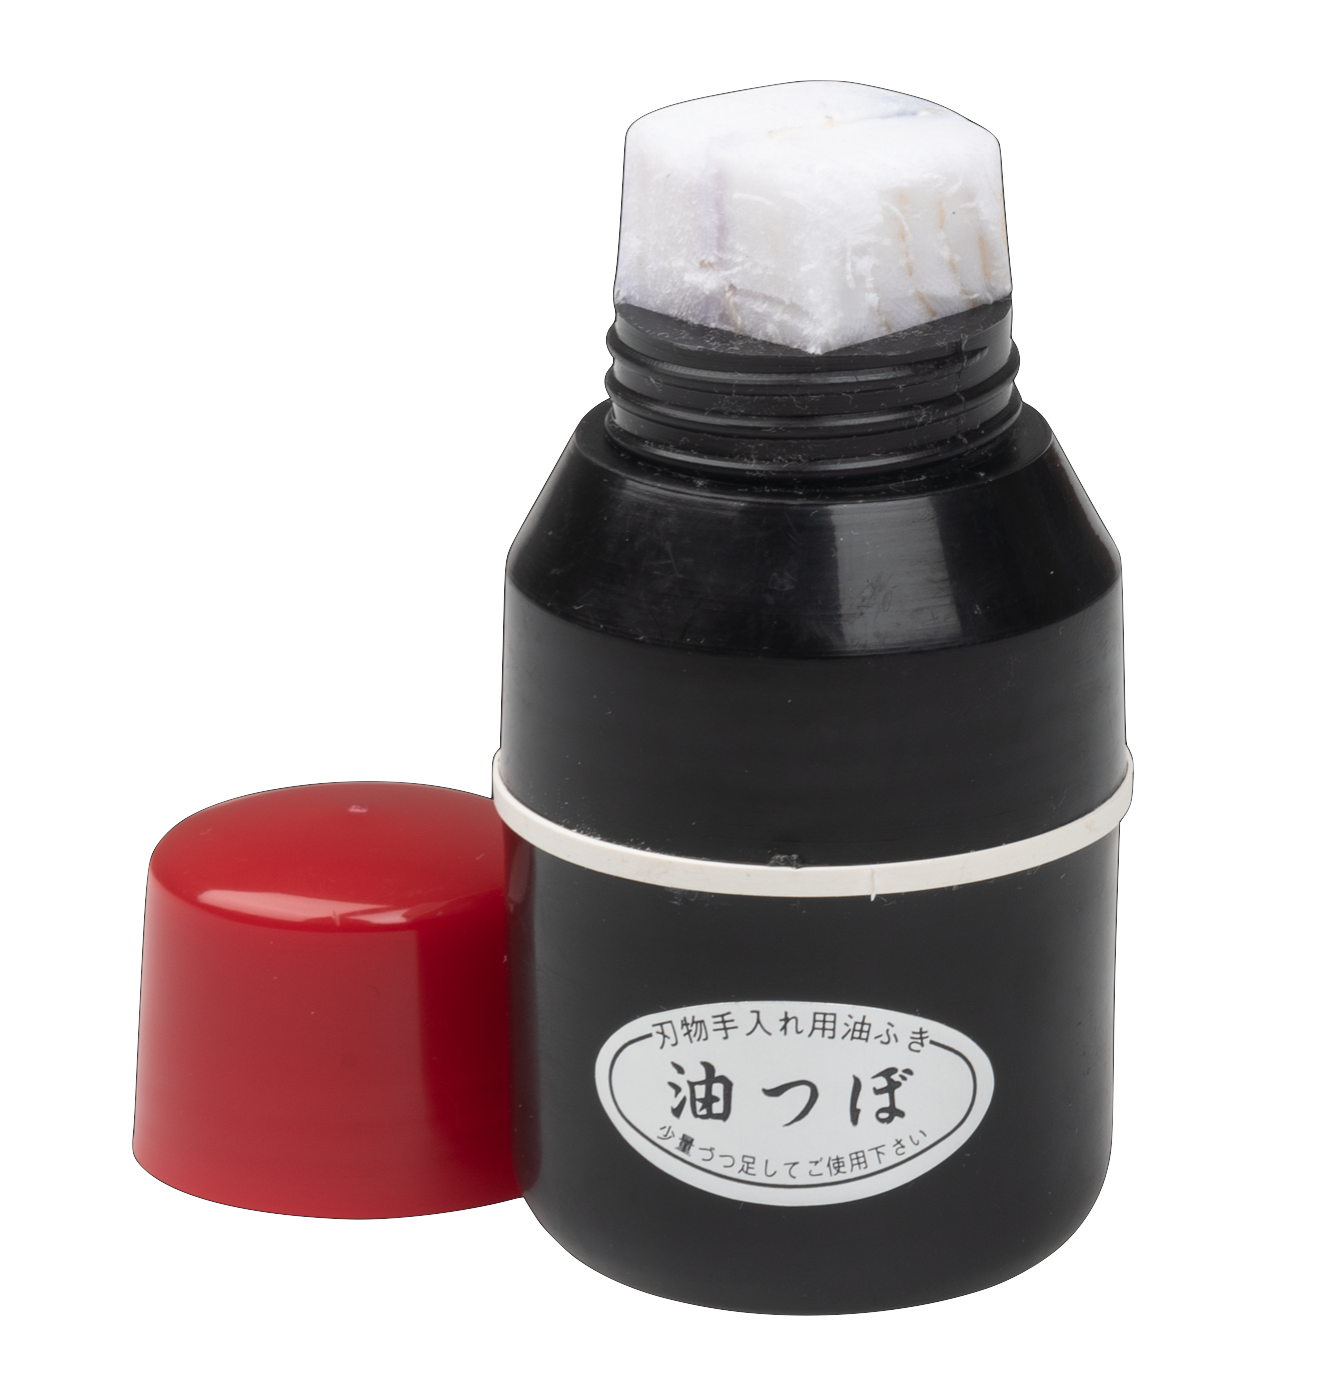 Niwaki Oil Dispenser